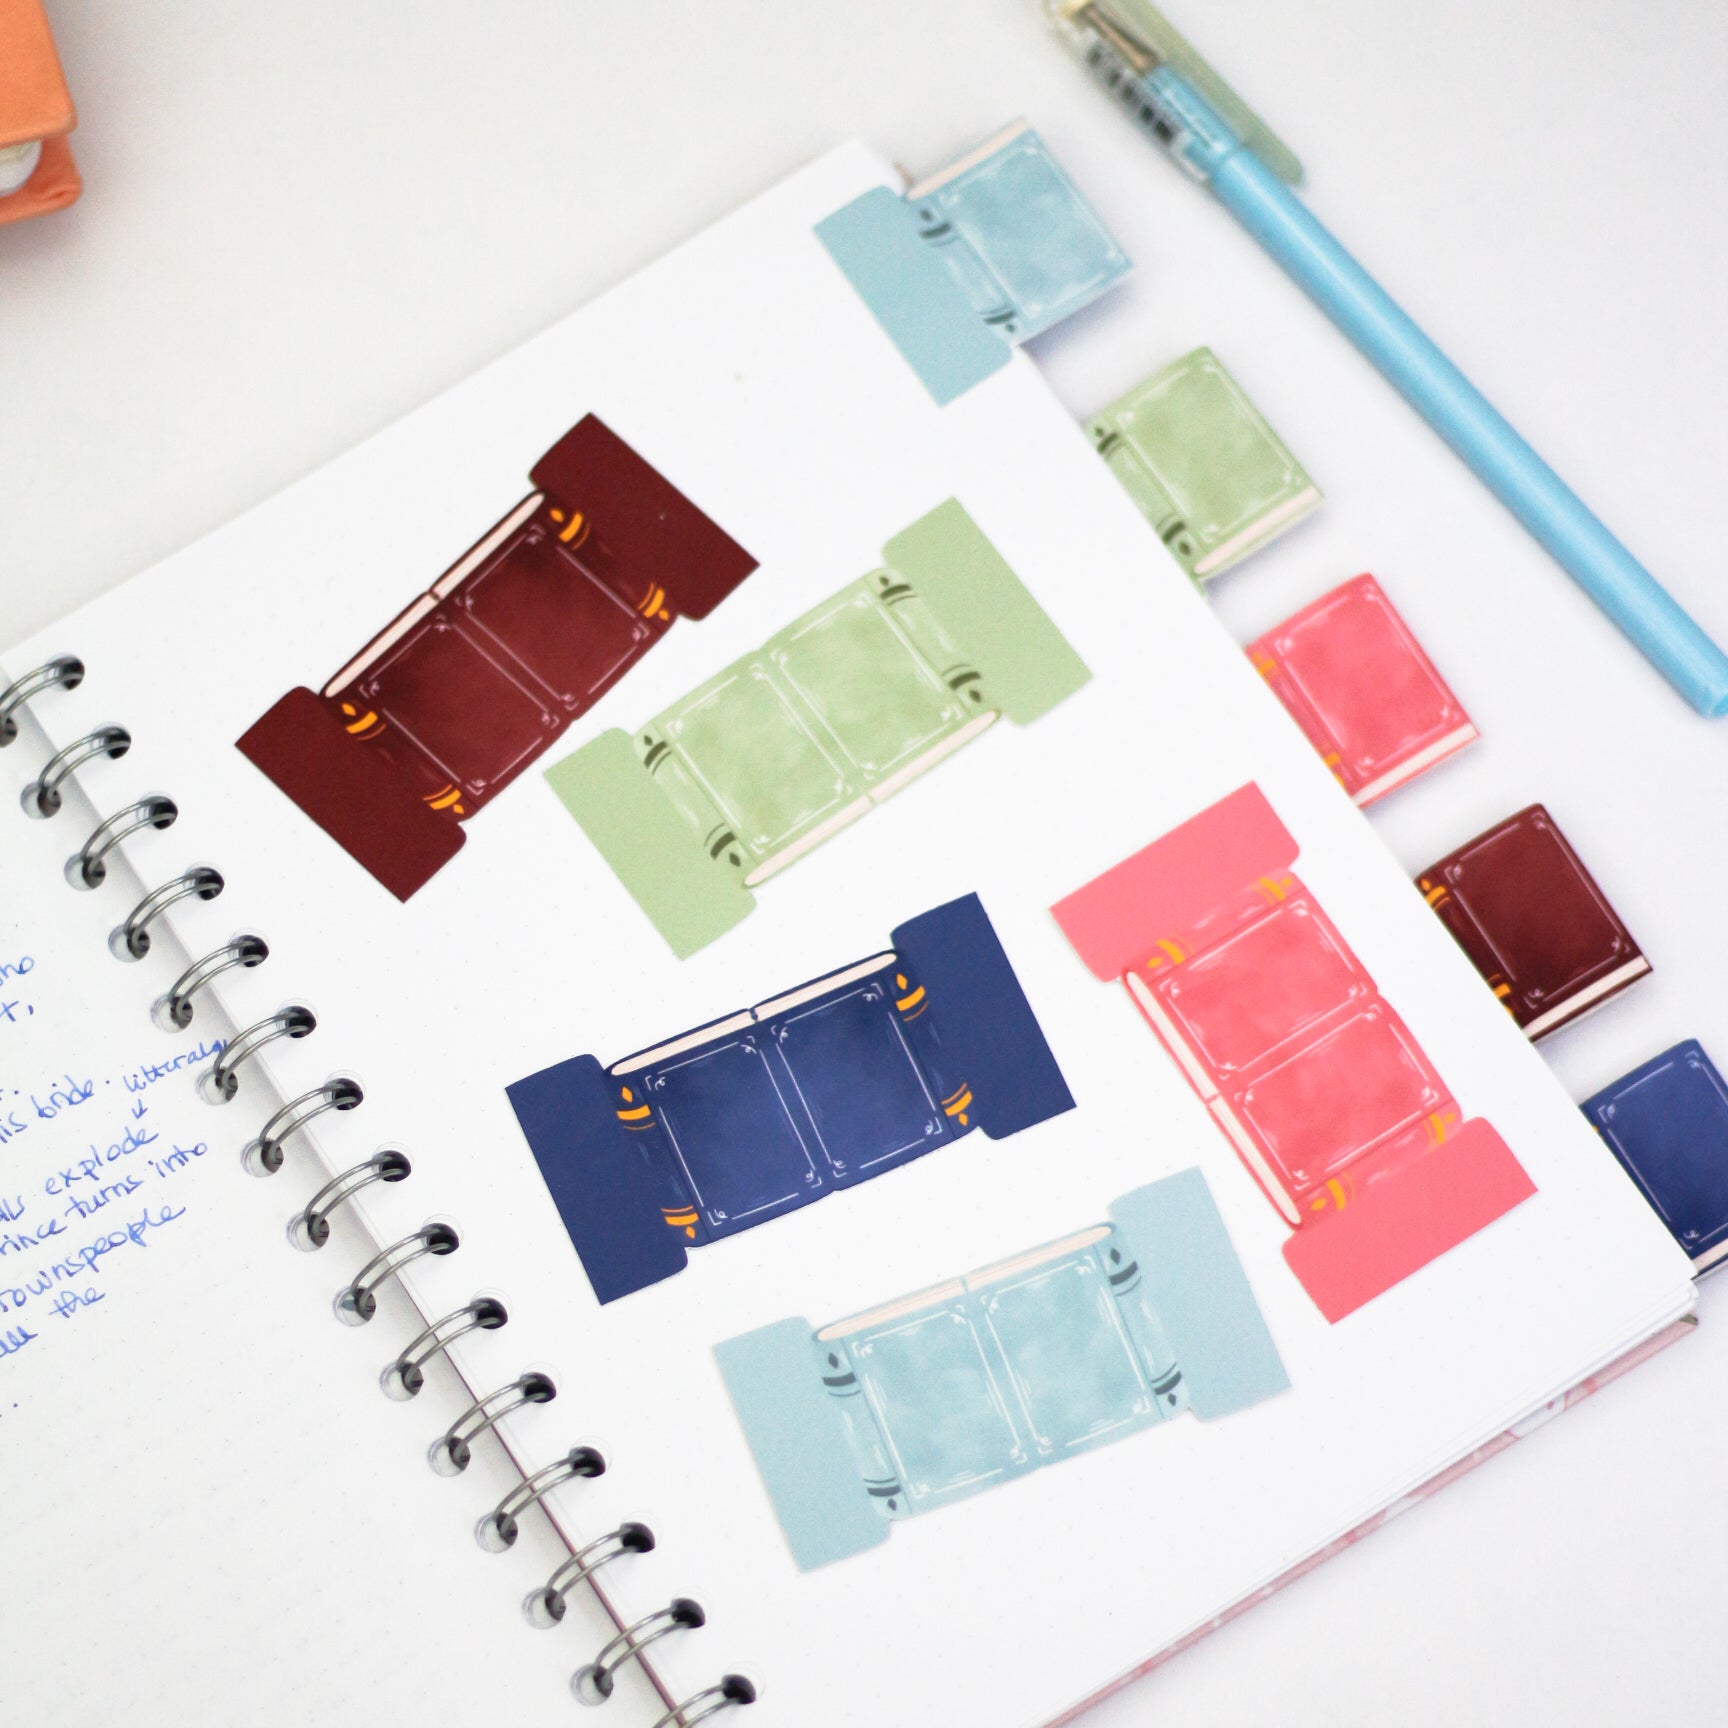 Onglets adhésifs mini livre - Pour diviser vos carnets et index – My Sweet  Paper Card